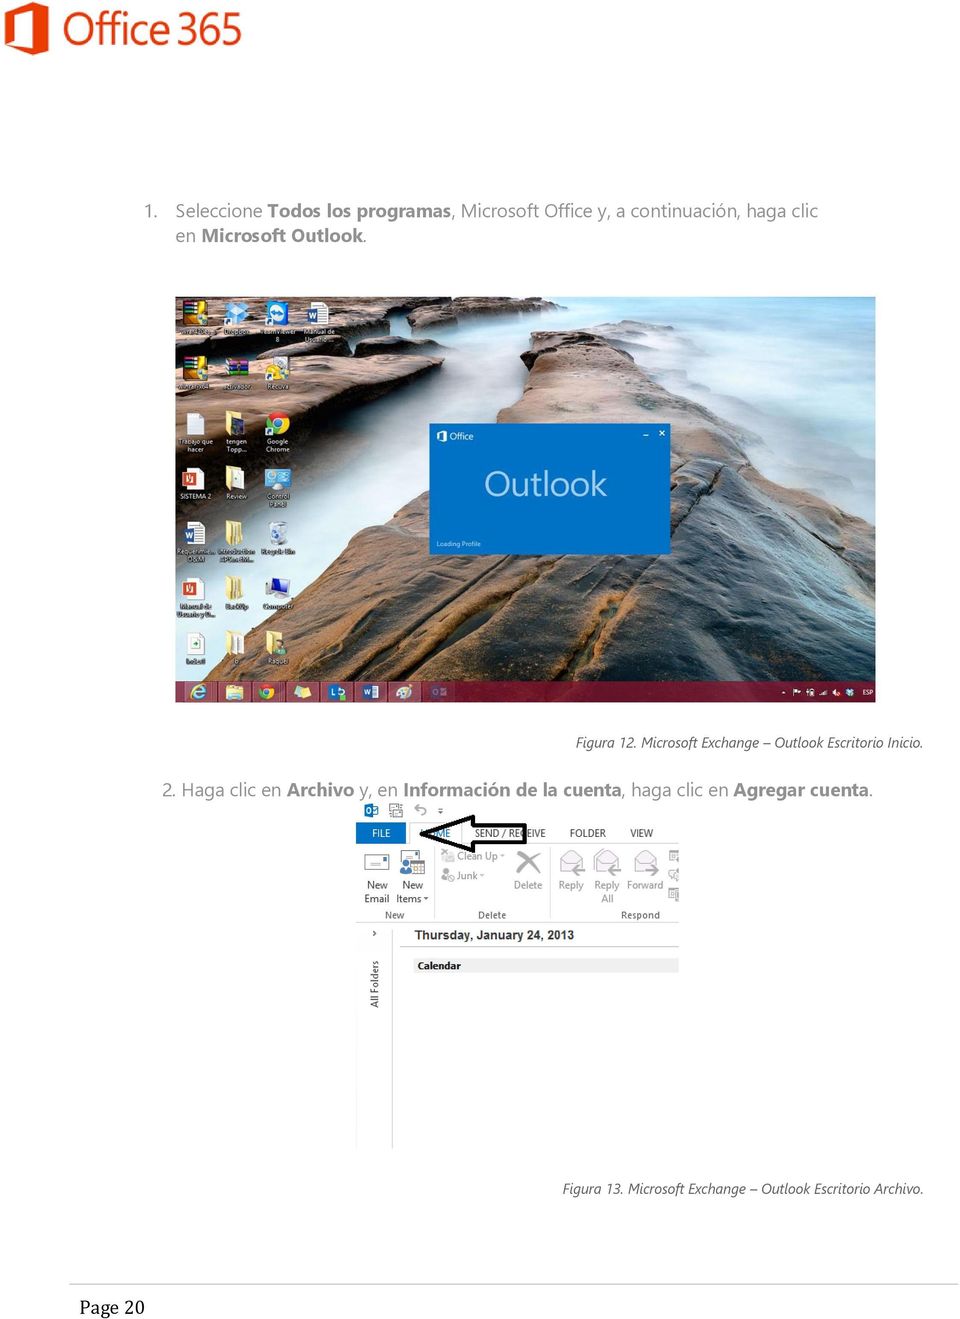 Microsoft Exchange Outlook Escritorio Inicio. 2.